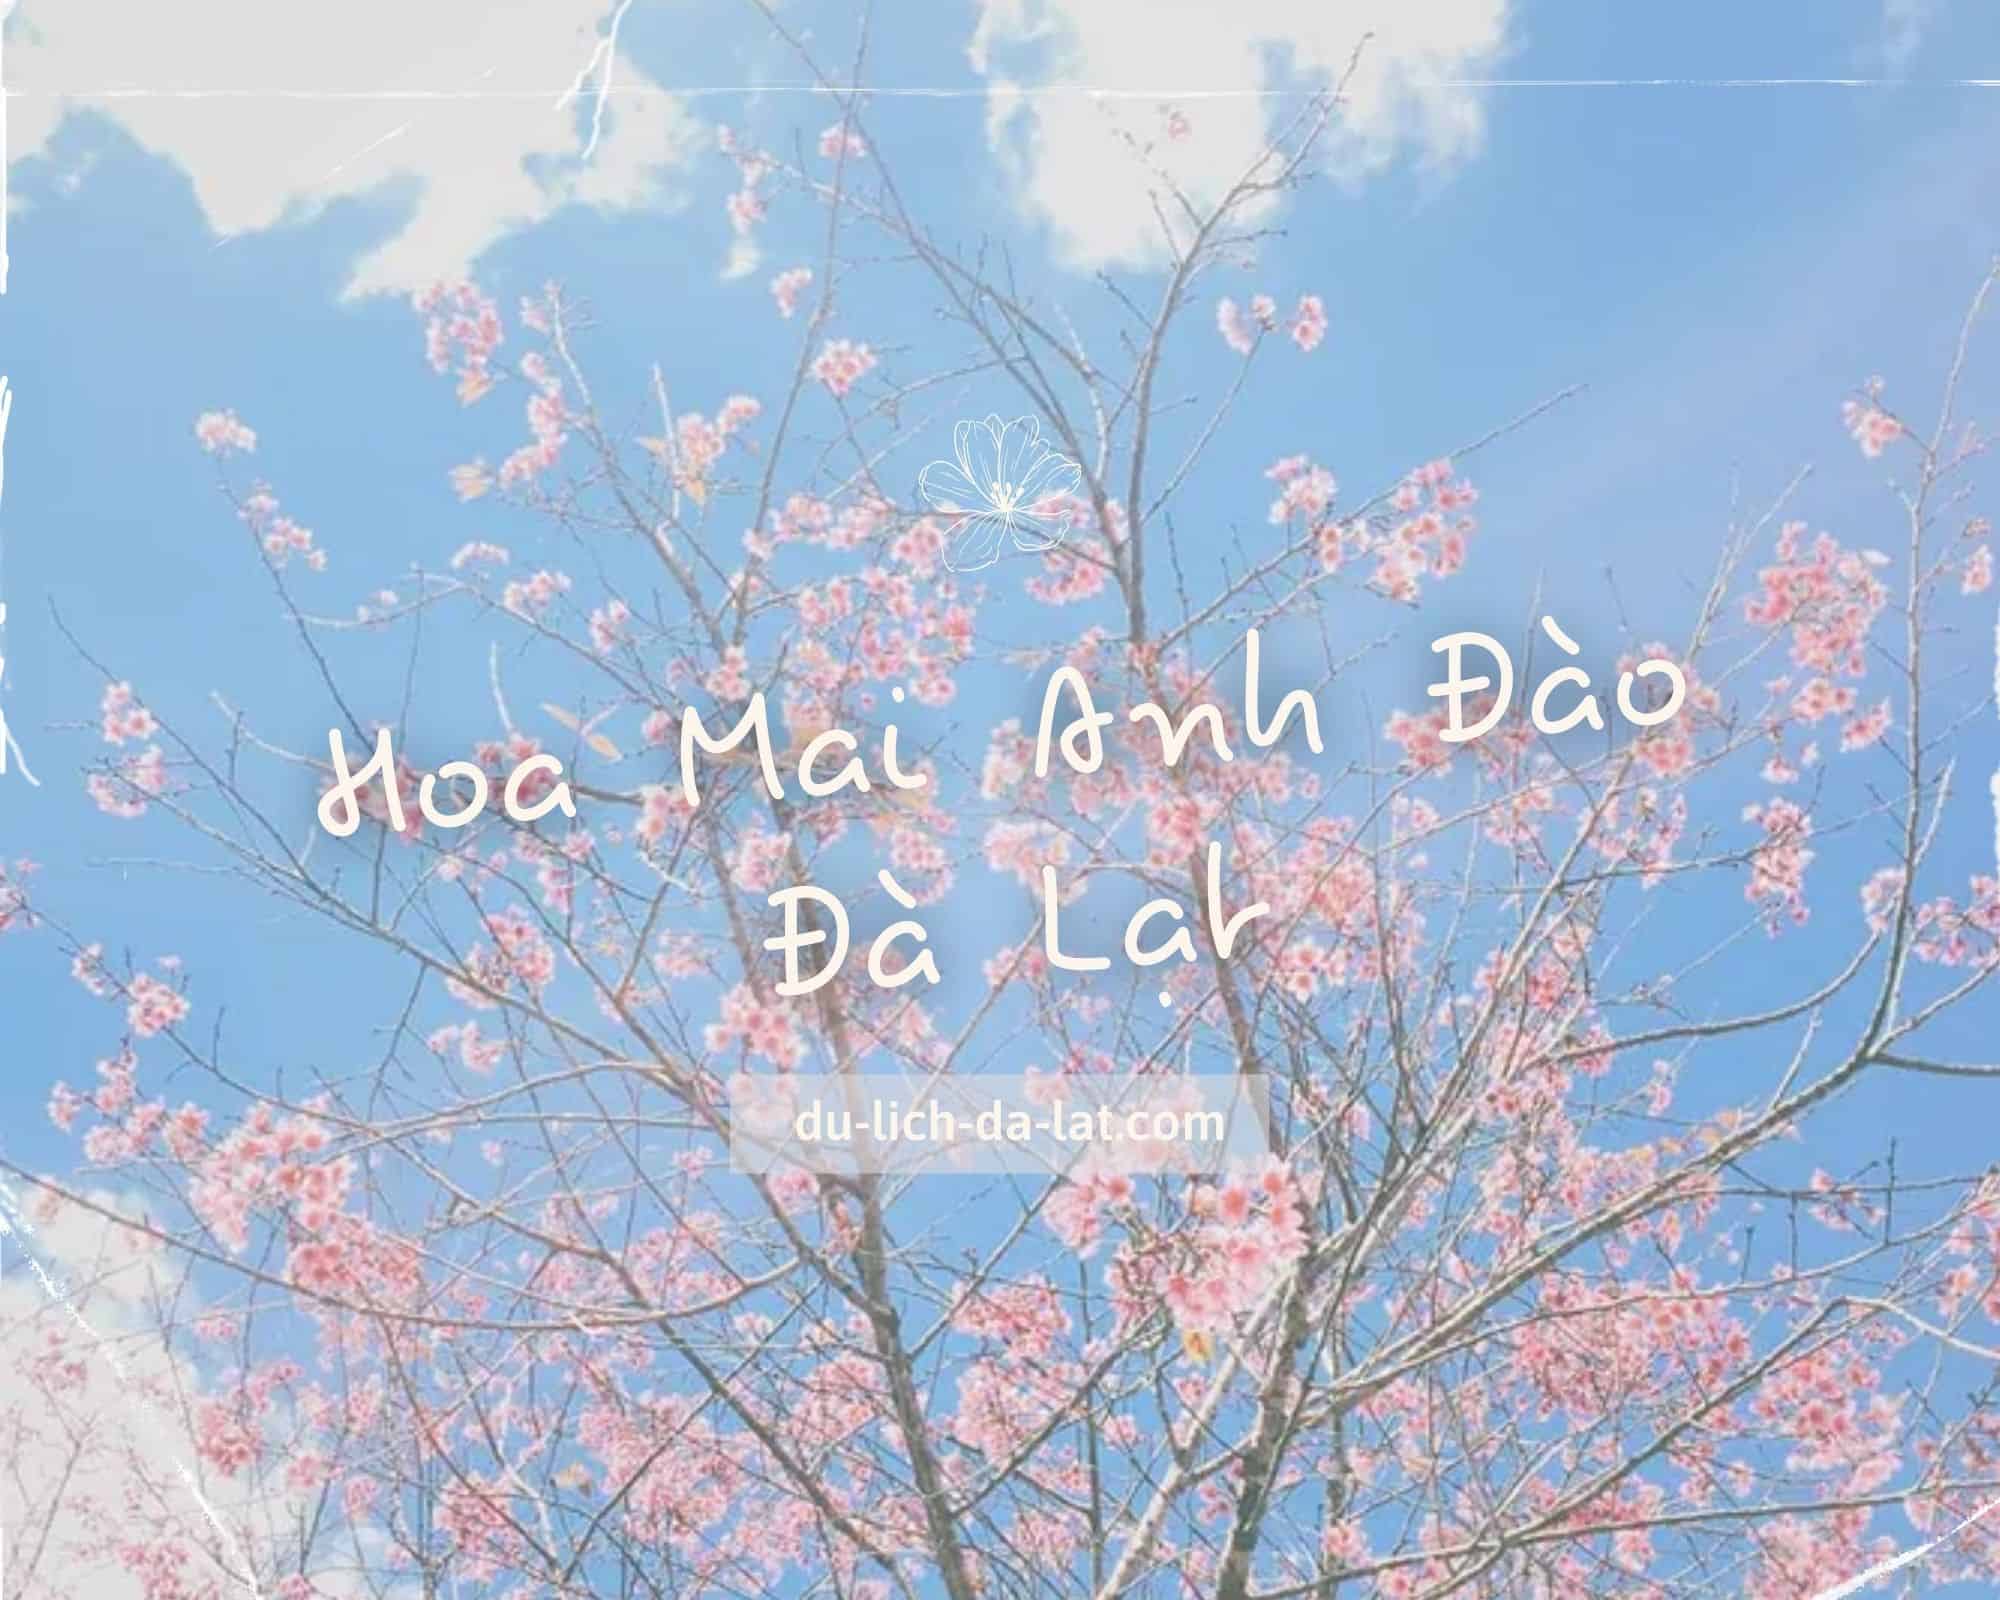 Hoa Mai Anh Đào Đà Lạt: Chào mừng bạn đến với hoa Mai Anh Đào Đà Lạt tươi đẹp! Đây là một trong những nơi du lịch hấp dẫn nhất Việt Nam, nơi bạn có thể thưởng ngoạn cả cảnh sắc thiên nhiên lẫn nghệ thuật trang trí phong cách Á Đông. Hãy đắm chìm trong vẻ đẹp của hoa Mai Anh Đào Đà Lạt.